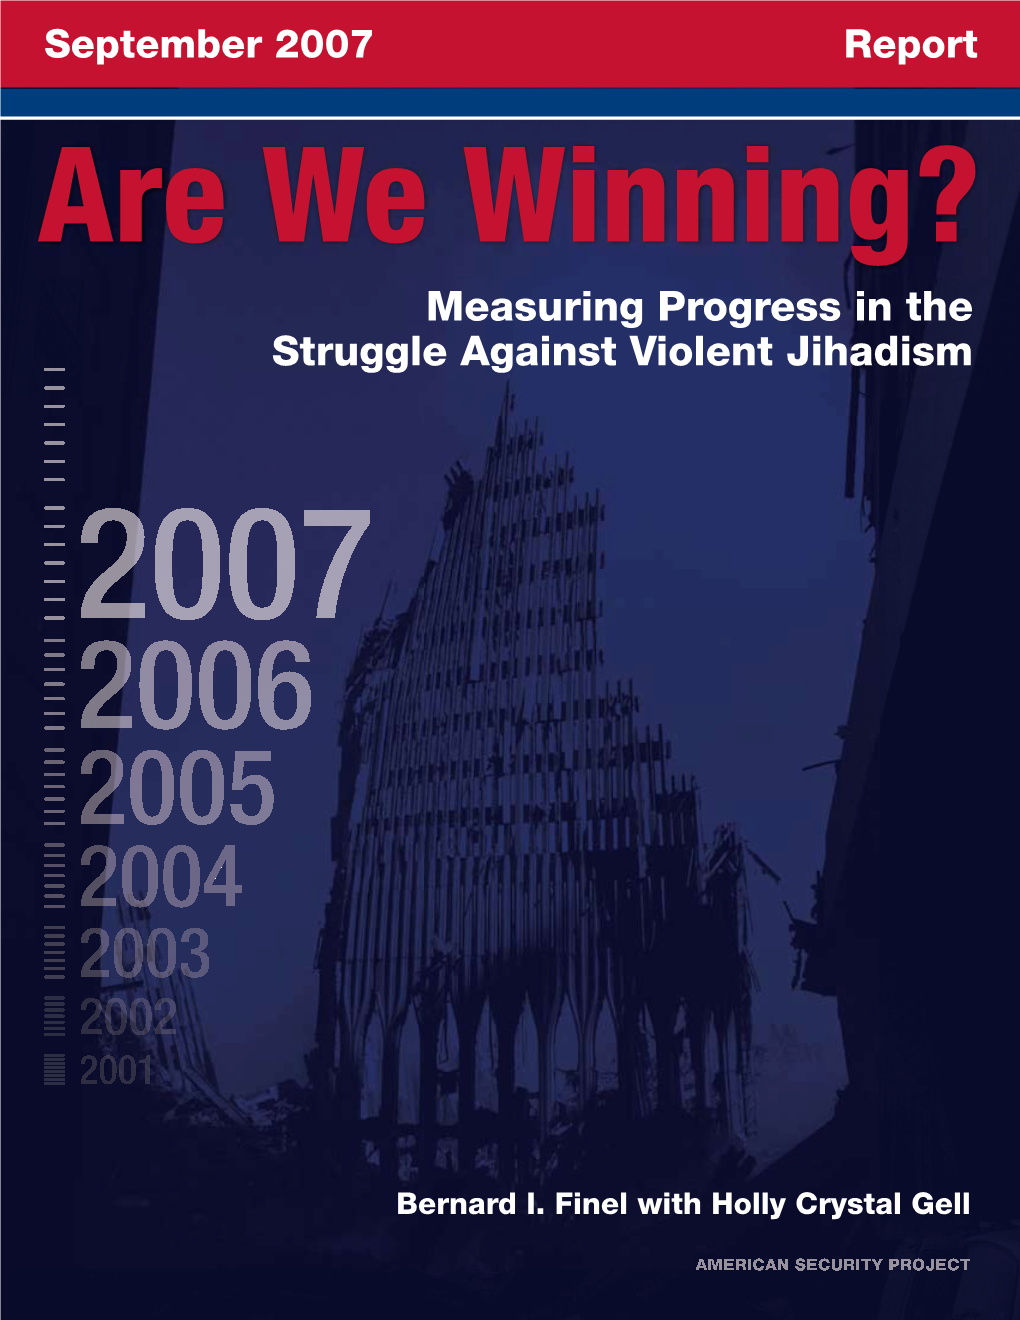 Measuring Progress in the Struggle Against Violent Jihadism